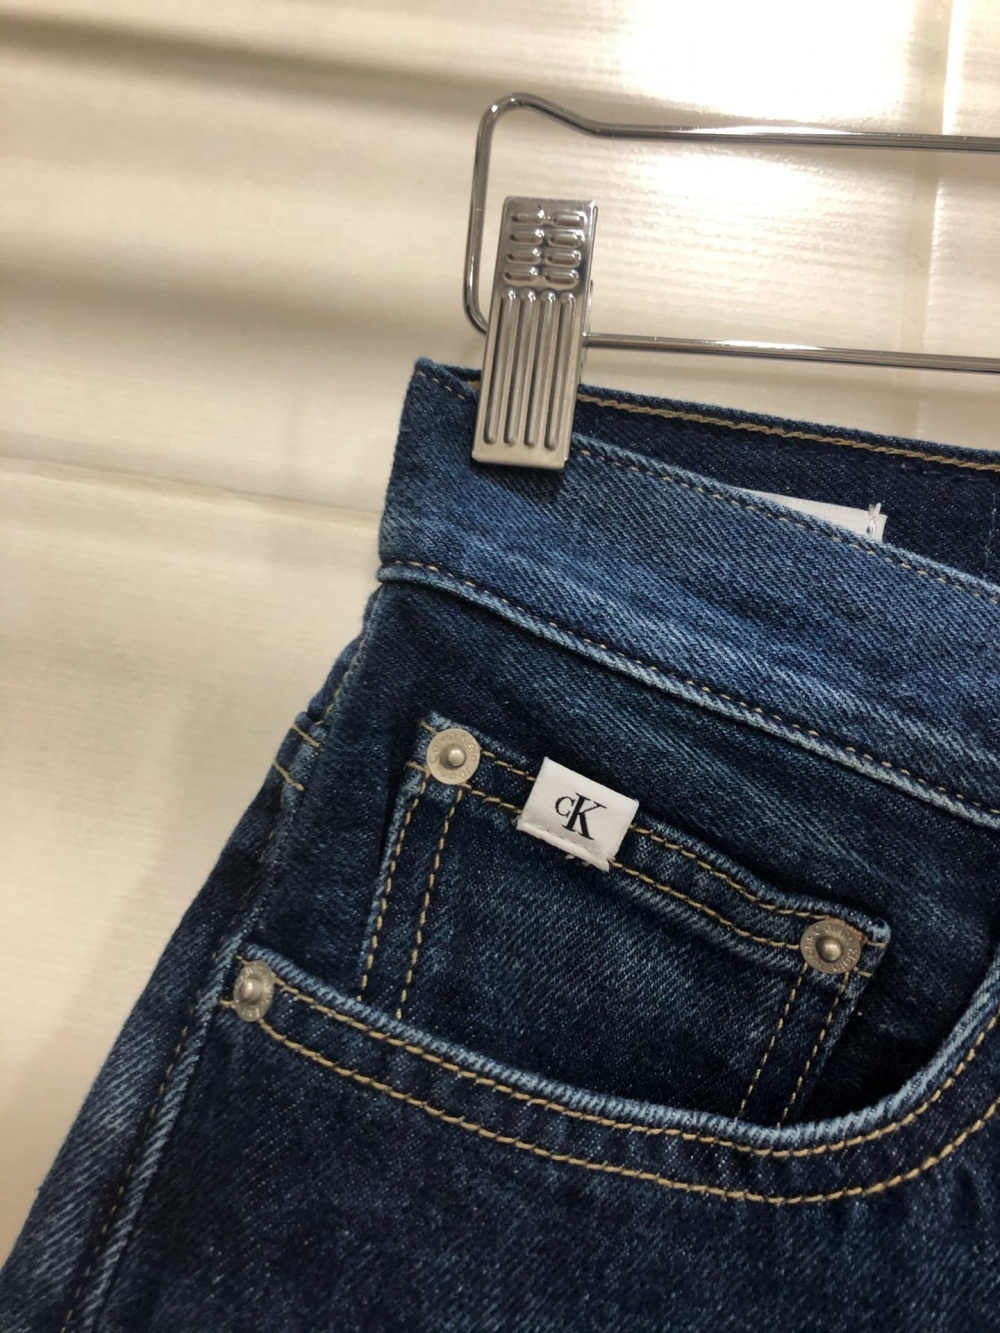 Женские джинсы Calvin Klein.Размер W 28.